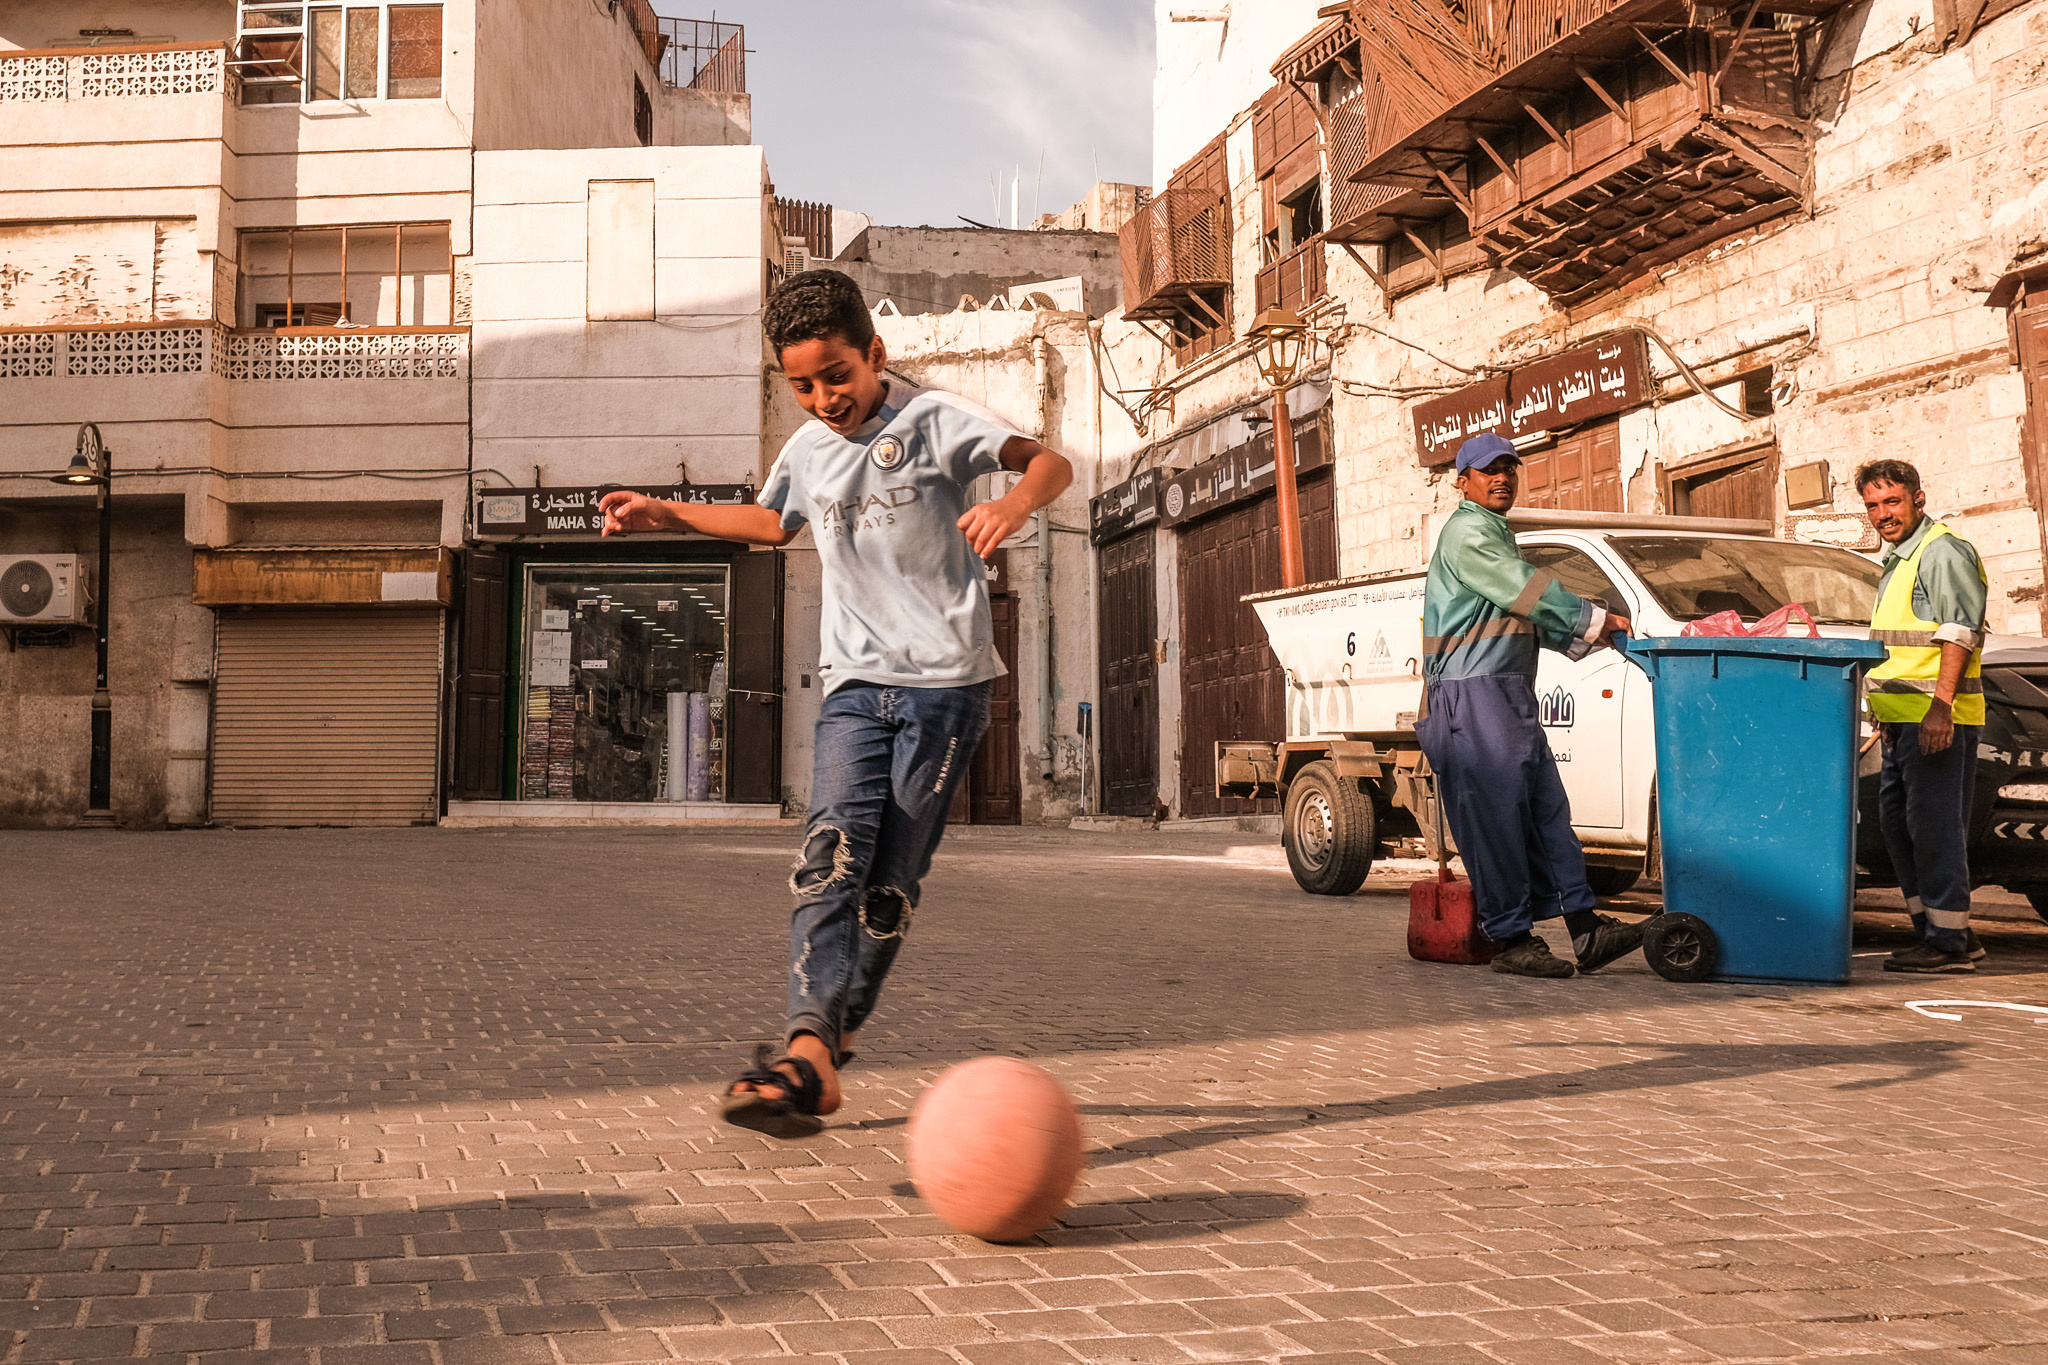 Мальчишки, как и в любой стране, гоняют на улице мяч